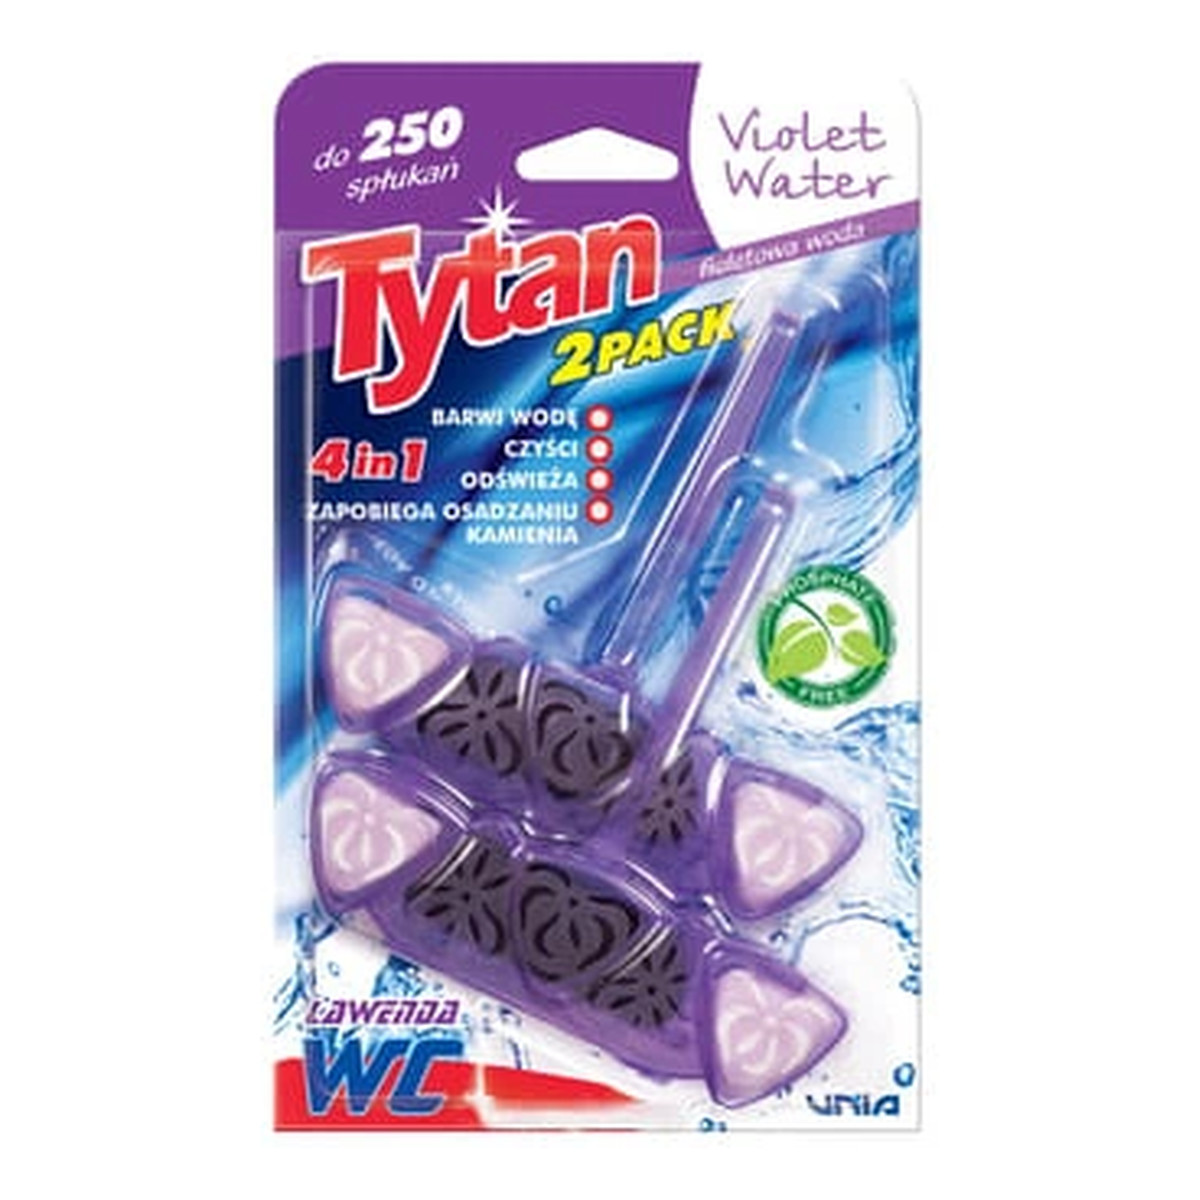 Tytan WC zawieszka czterofunkcyjna barwiąca wodę Violet Water